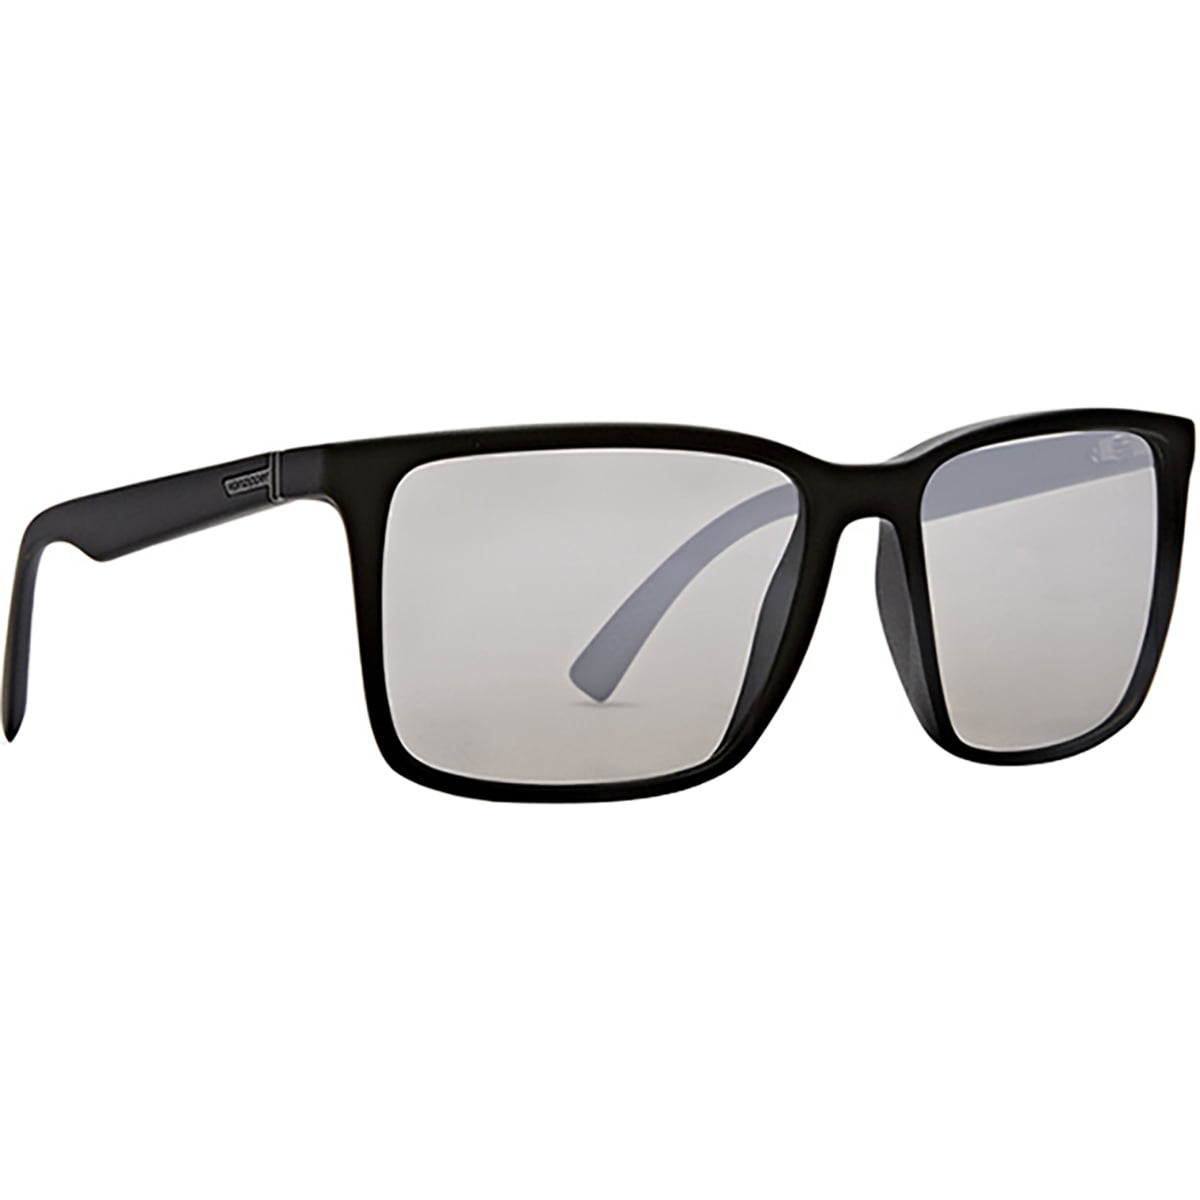 VonZipper - VonZipper Men's Lesmore Sunglasses,OS,Black/Grey - Walmart ...